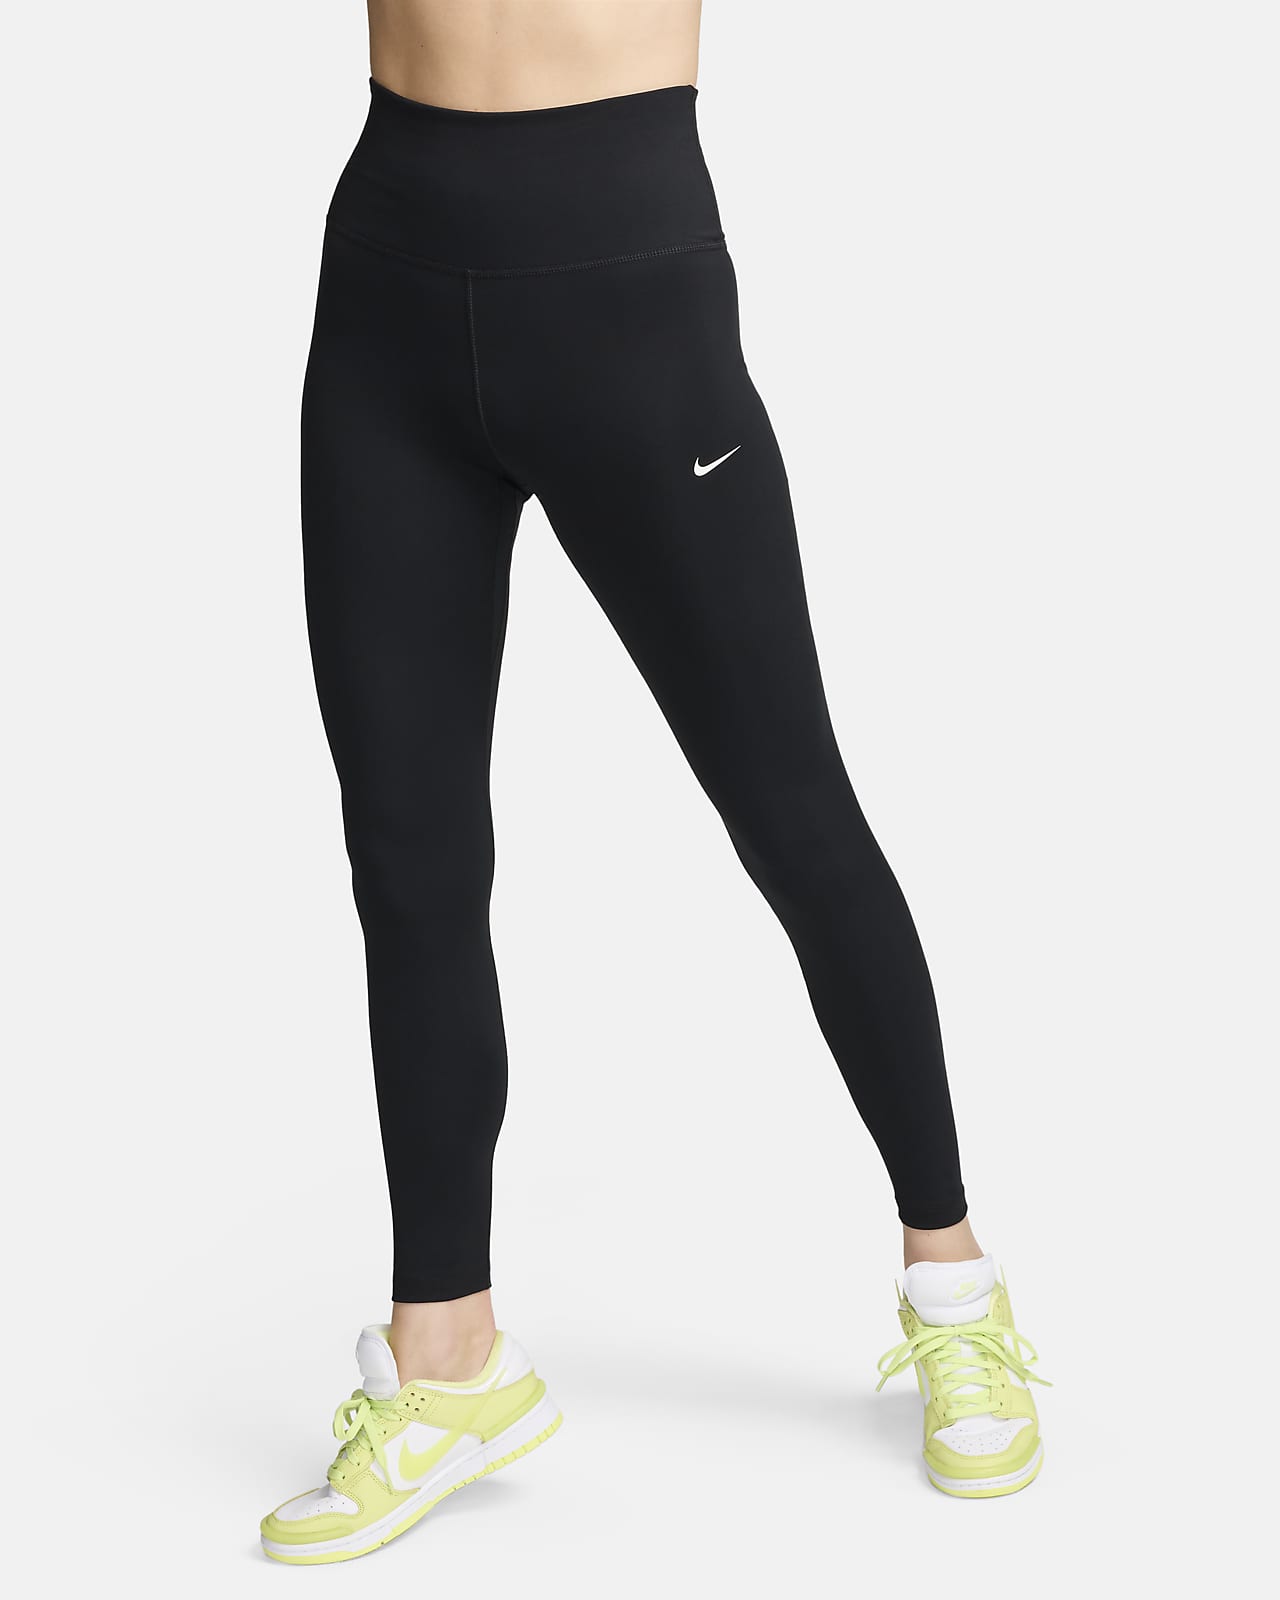 Leggings Nike Women Stock Full Length Tight